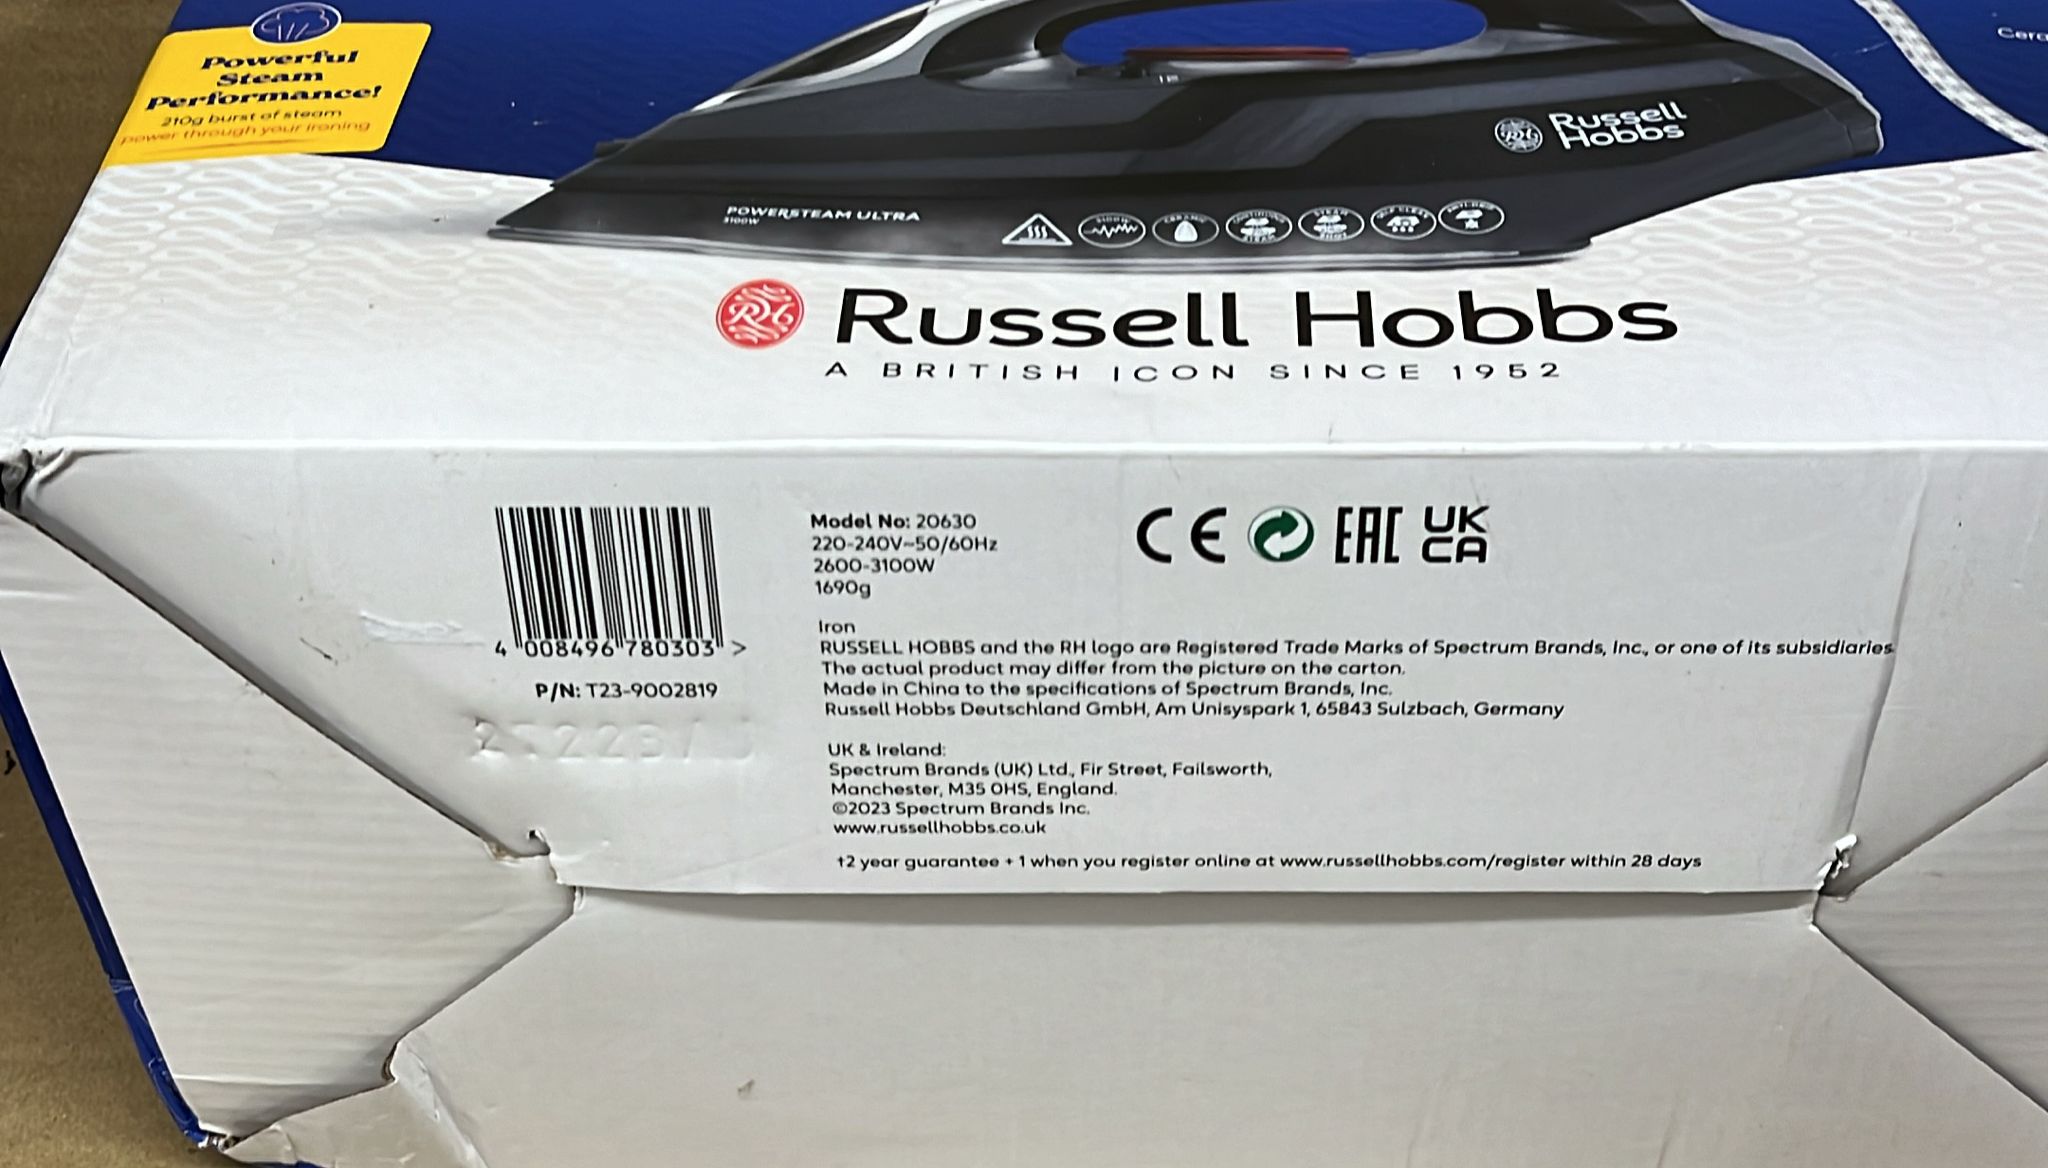 Russell Hobbs 20630 Powersteam Ultra Steam Iron -Black - 0303D